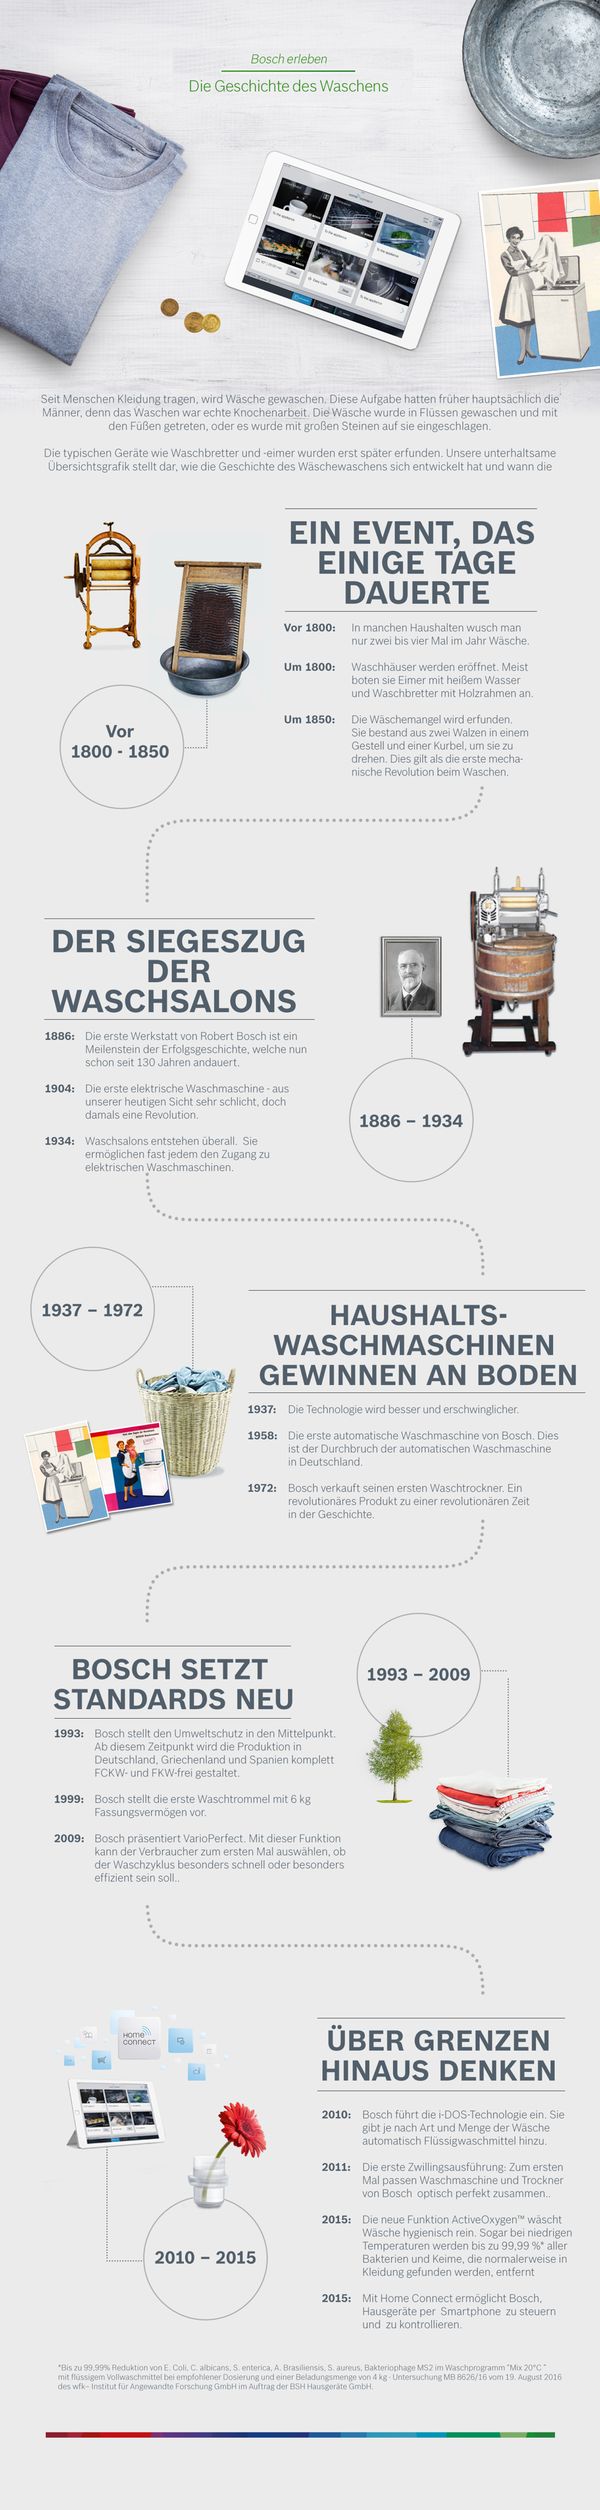 Bosch erleben - die Geschichte der Wäsche